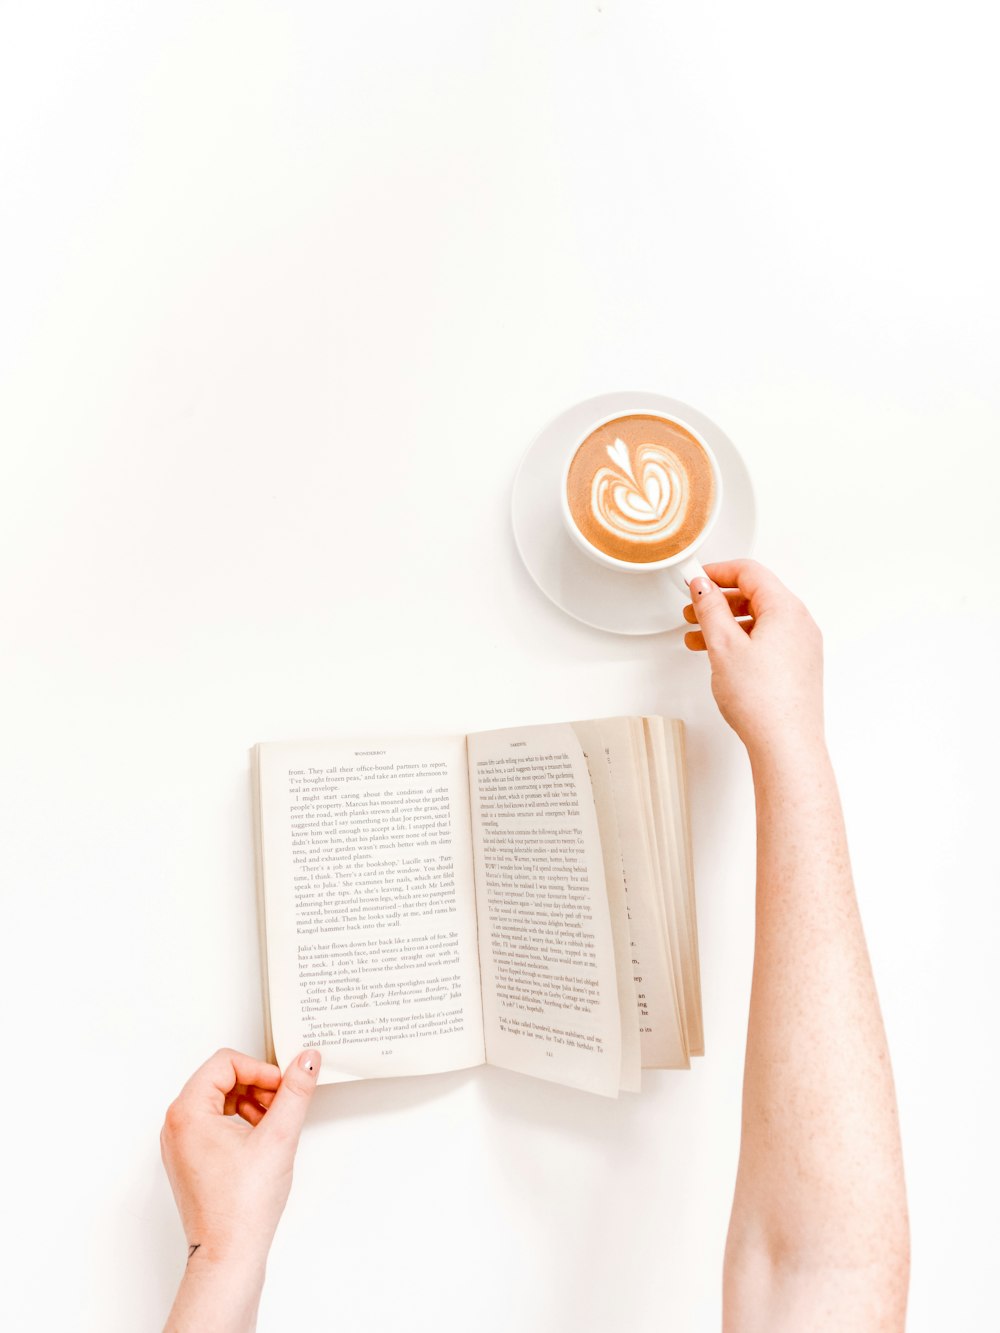 Persona de la fotografía plana que sostiene la taza con el café con leche y el libro